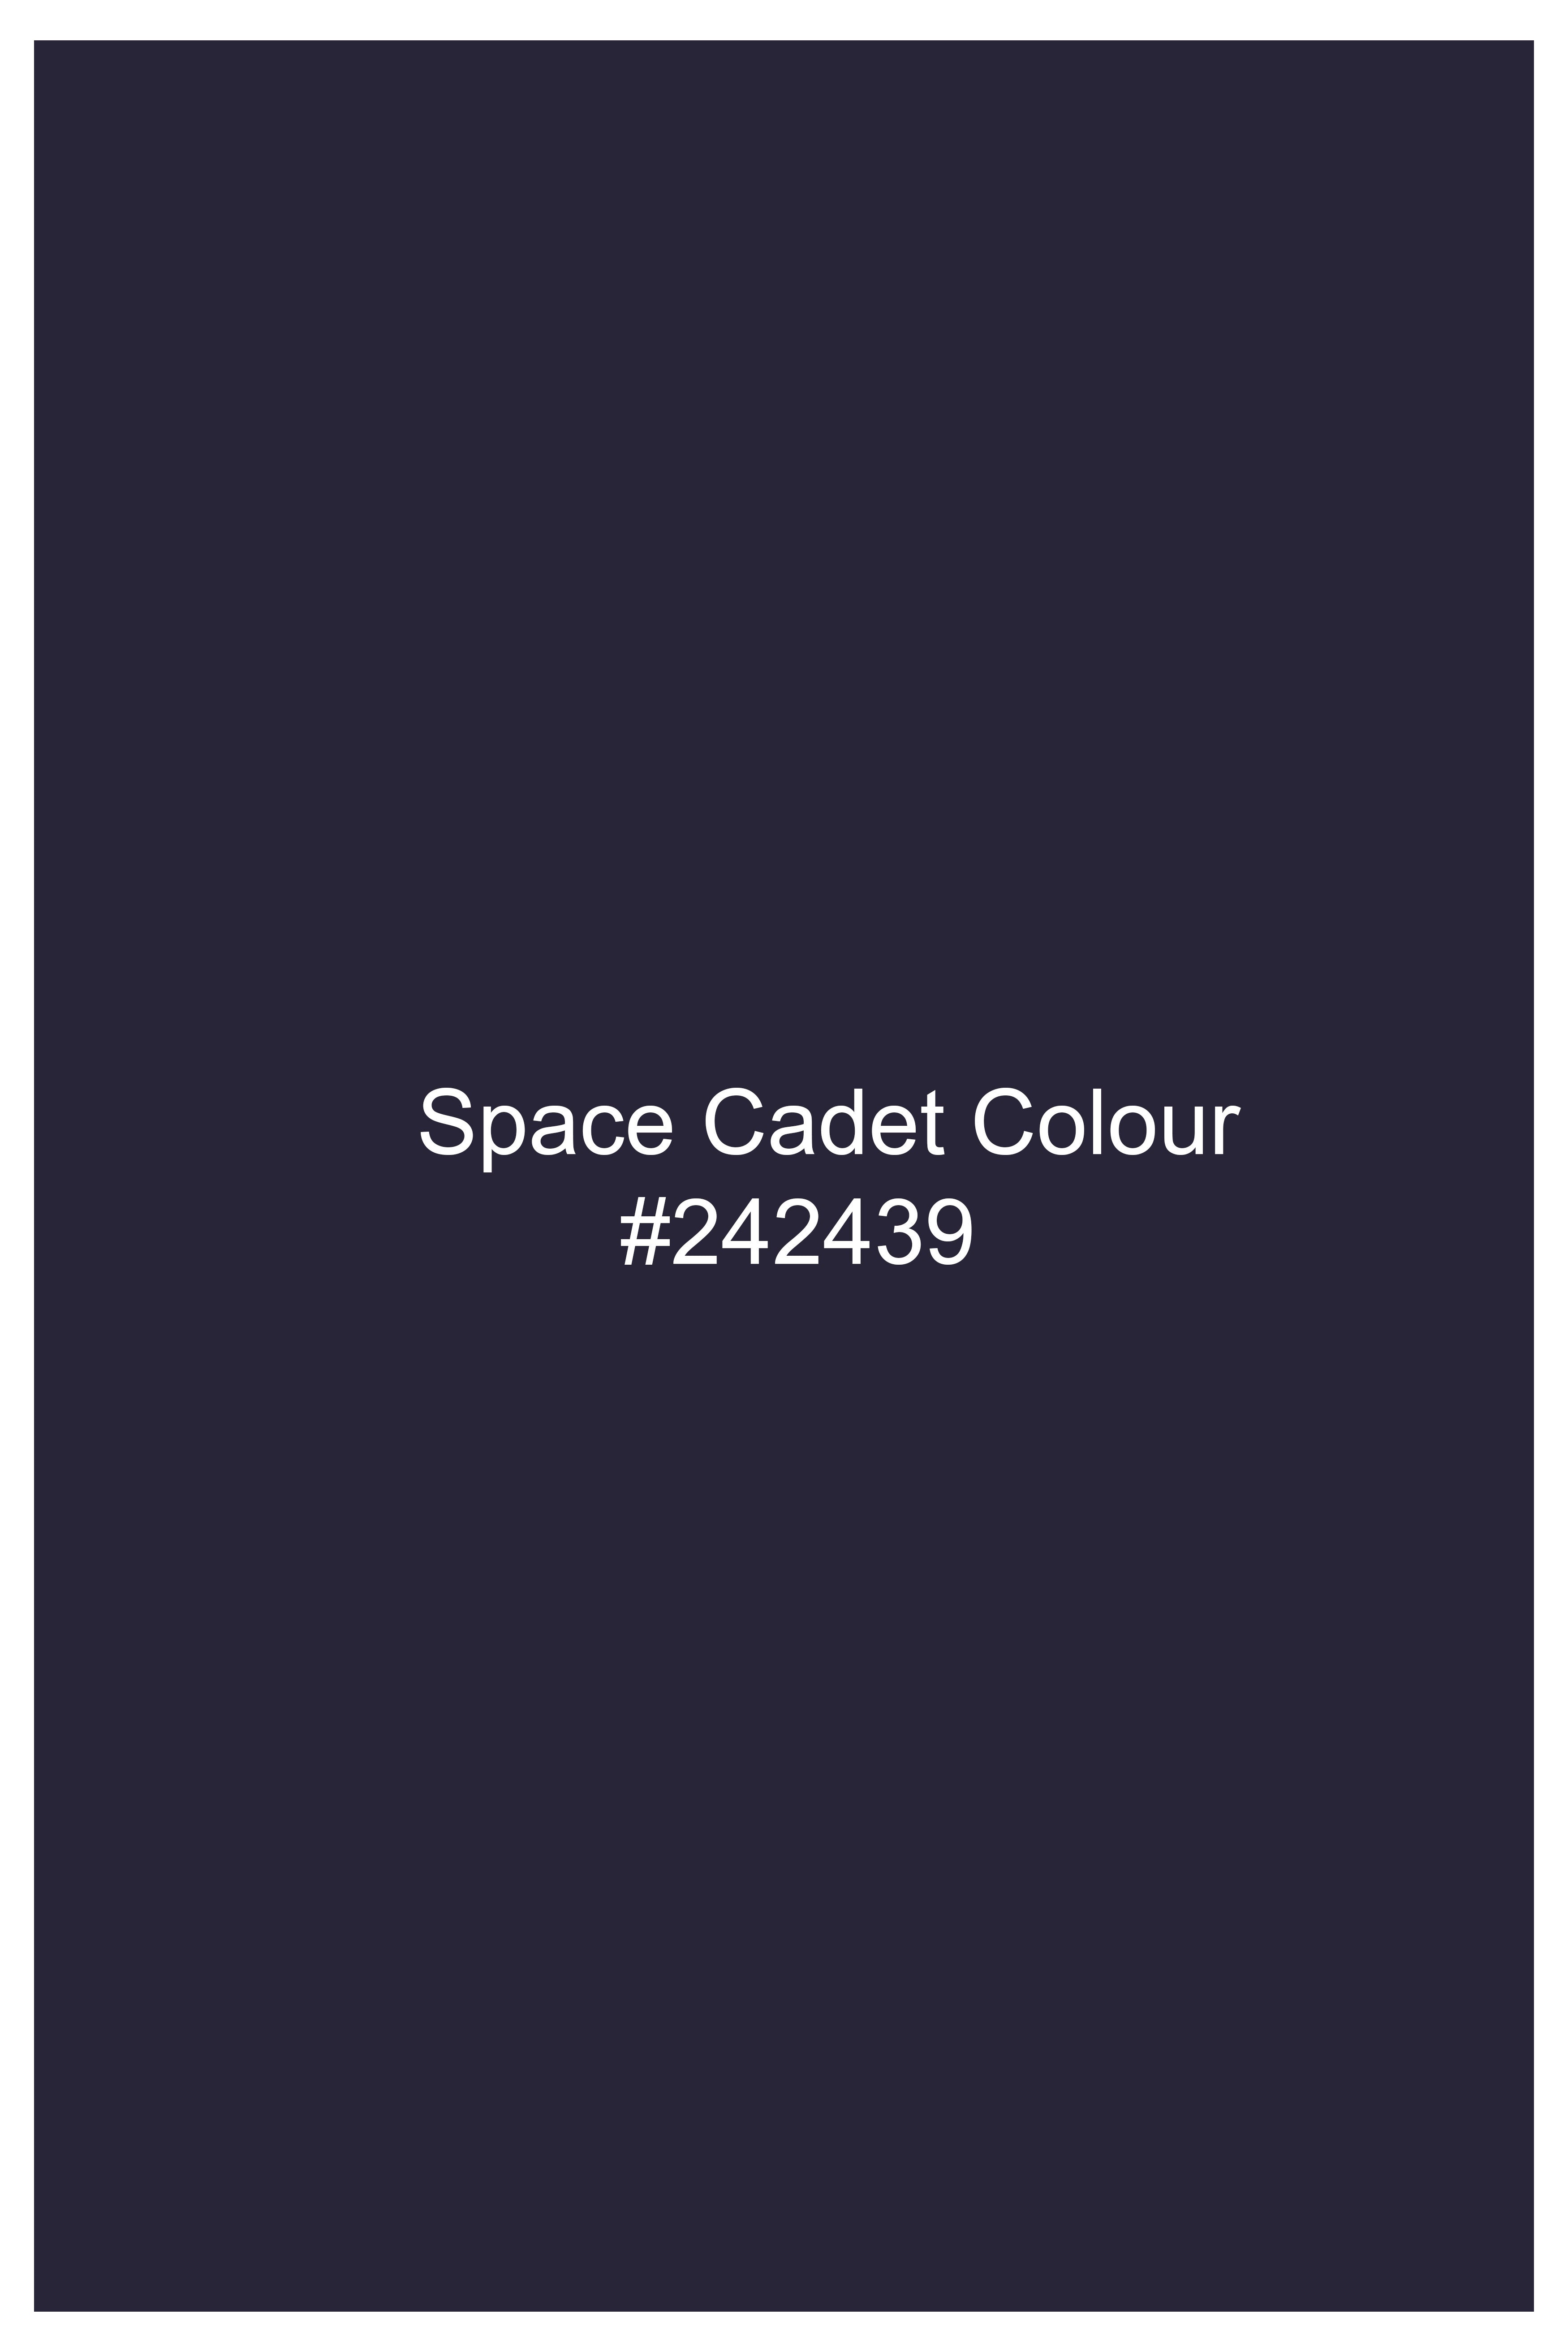 Space Cadet Blue Wool Rich Designer Suit ST3014-D132-36, ST3014-D132-38, ST3014-D132-40, ST3014-D132-42, ST3014-D132-44, ST3014-D132-46, ST3014-D132-48, ST3014-D132-50, ST3014-D132-52, ST3014-D132-54, ST3014-D132-56, ST3014-D132-58, ST3014-D132-60